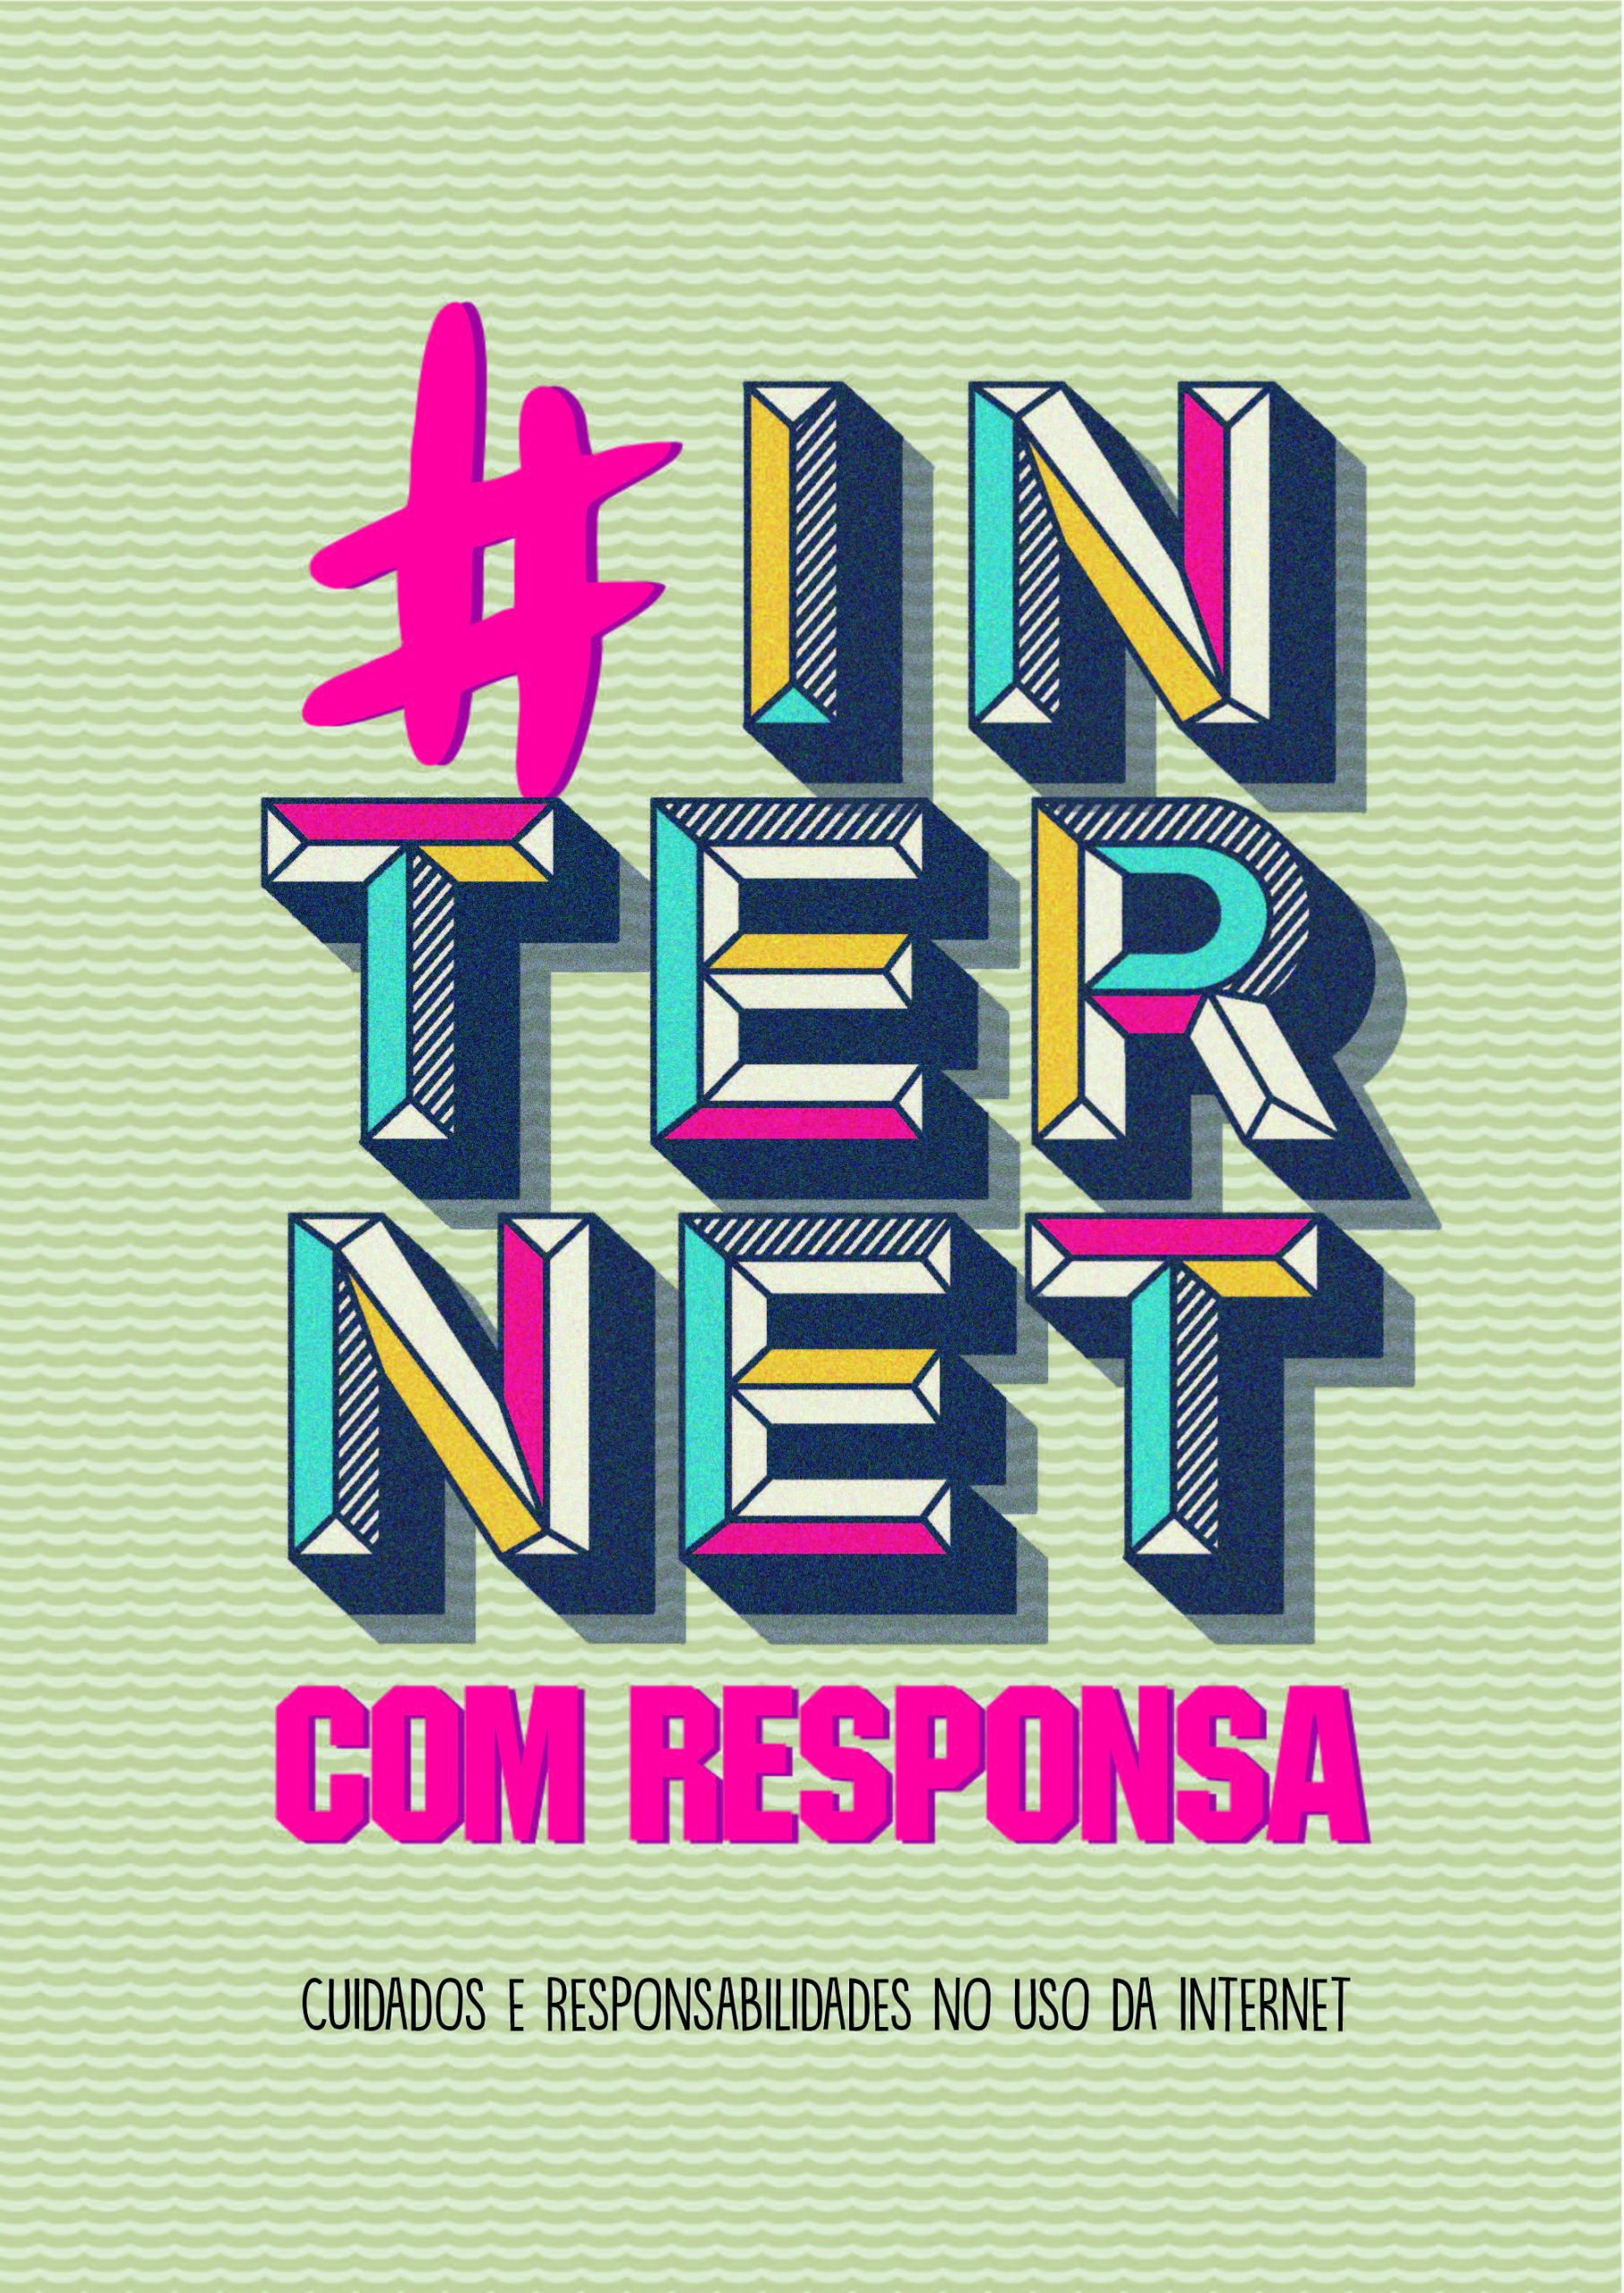 Capa da Cartilha com fundo de textura verde e título grande colorido centralizado que diz "# internet com responssa" e, abaixo, texto em preto que diz "cuidados e responsabilidades no uso da internet"